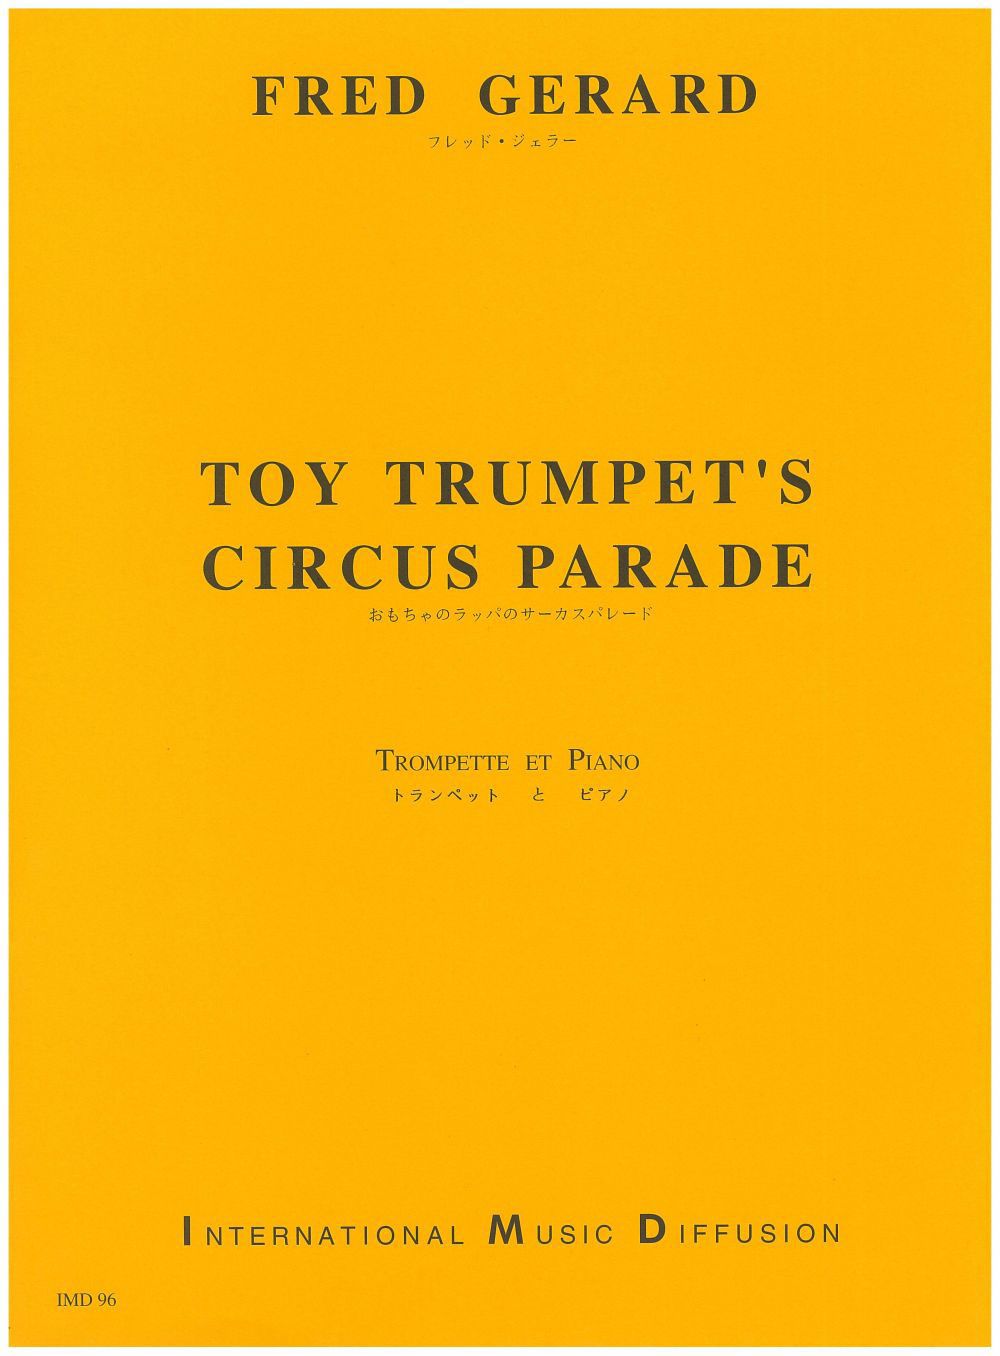 IMD ARPEGES GERARD - TOY TRUMPET'S CIRCUS PARADE - TROMPETTE ET PIANO 